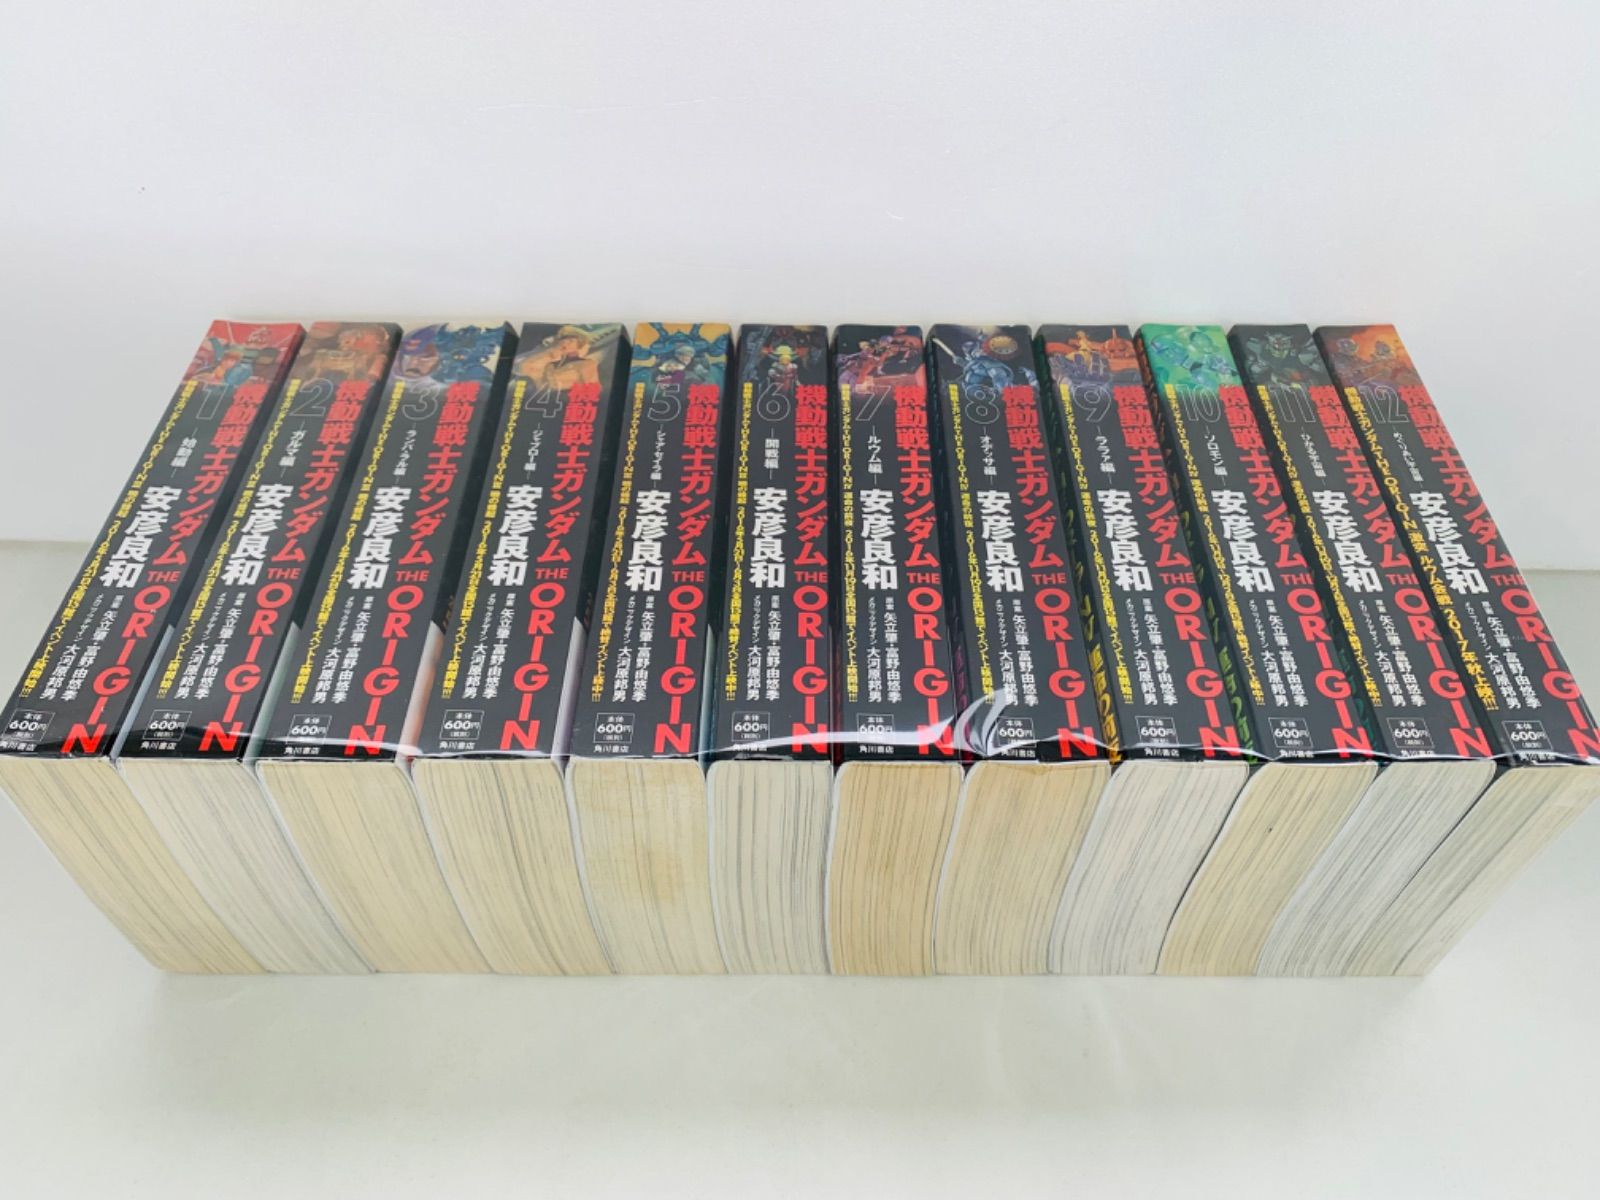 愛蔵版 機動戦士ガンダム THE ORIGIN 1~12巻 全巻セット Ⅰ~ⅩⅡ ...